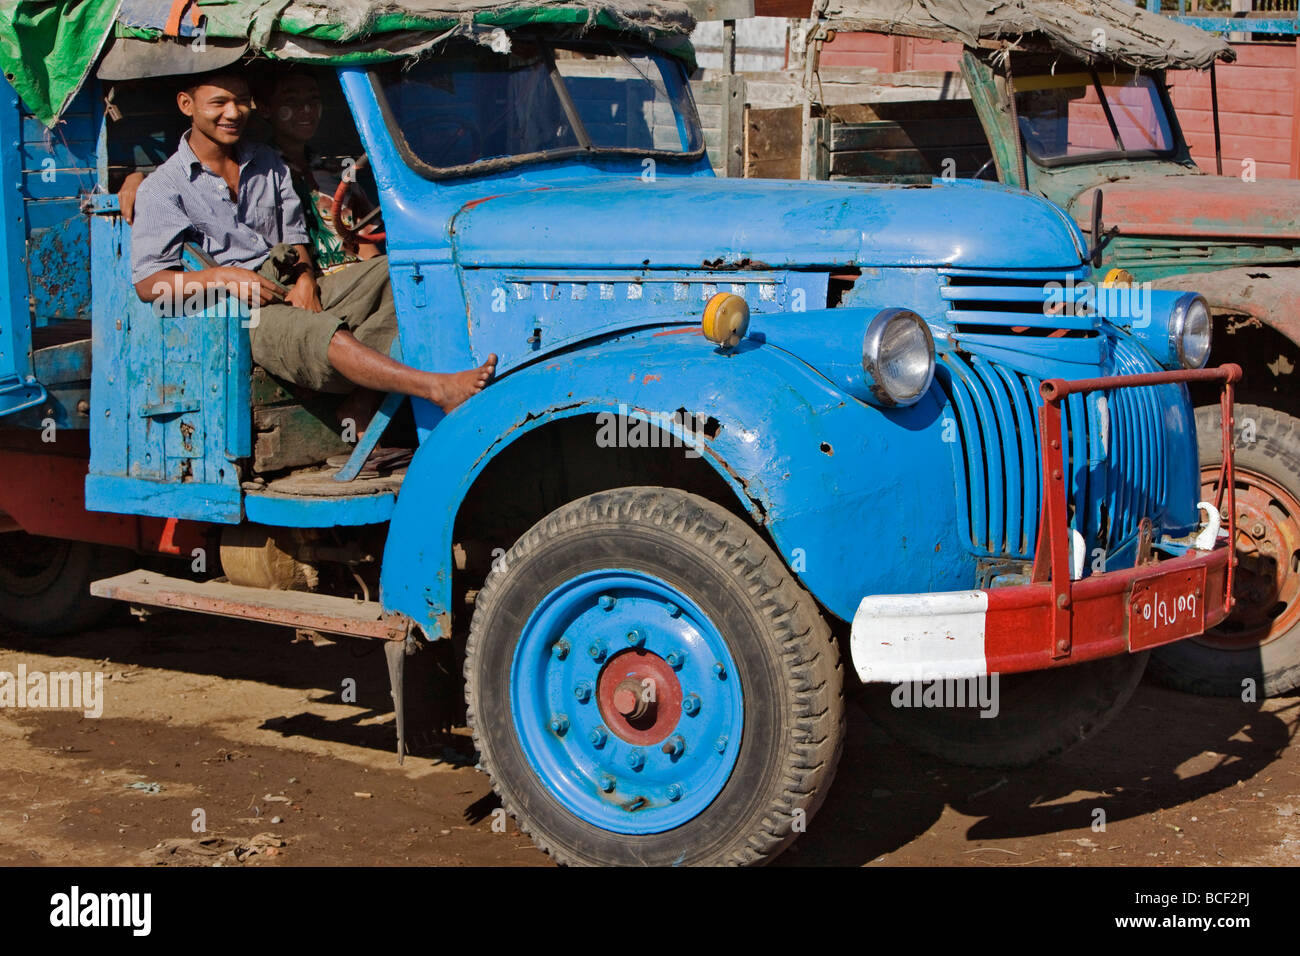 Myanmar Birmania, Sittwe. Vecchi veicoli militari come questo autocarro Chevrolet sono state abbandonate come scarto in Birmania dopo la Seconda Guerra Mondiale. Foto Stock